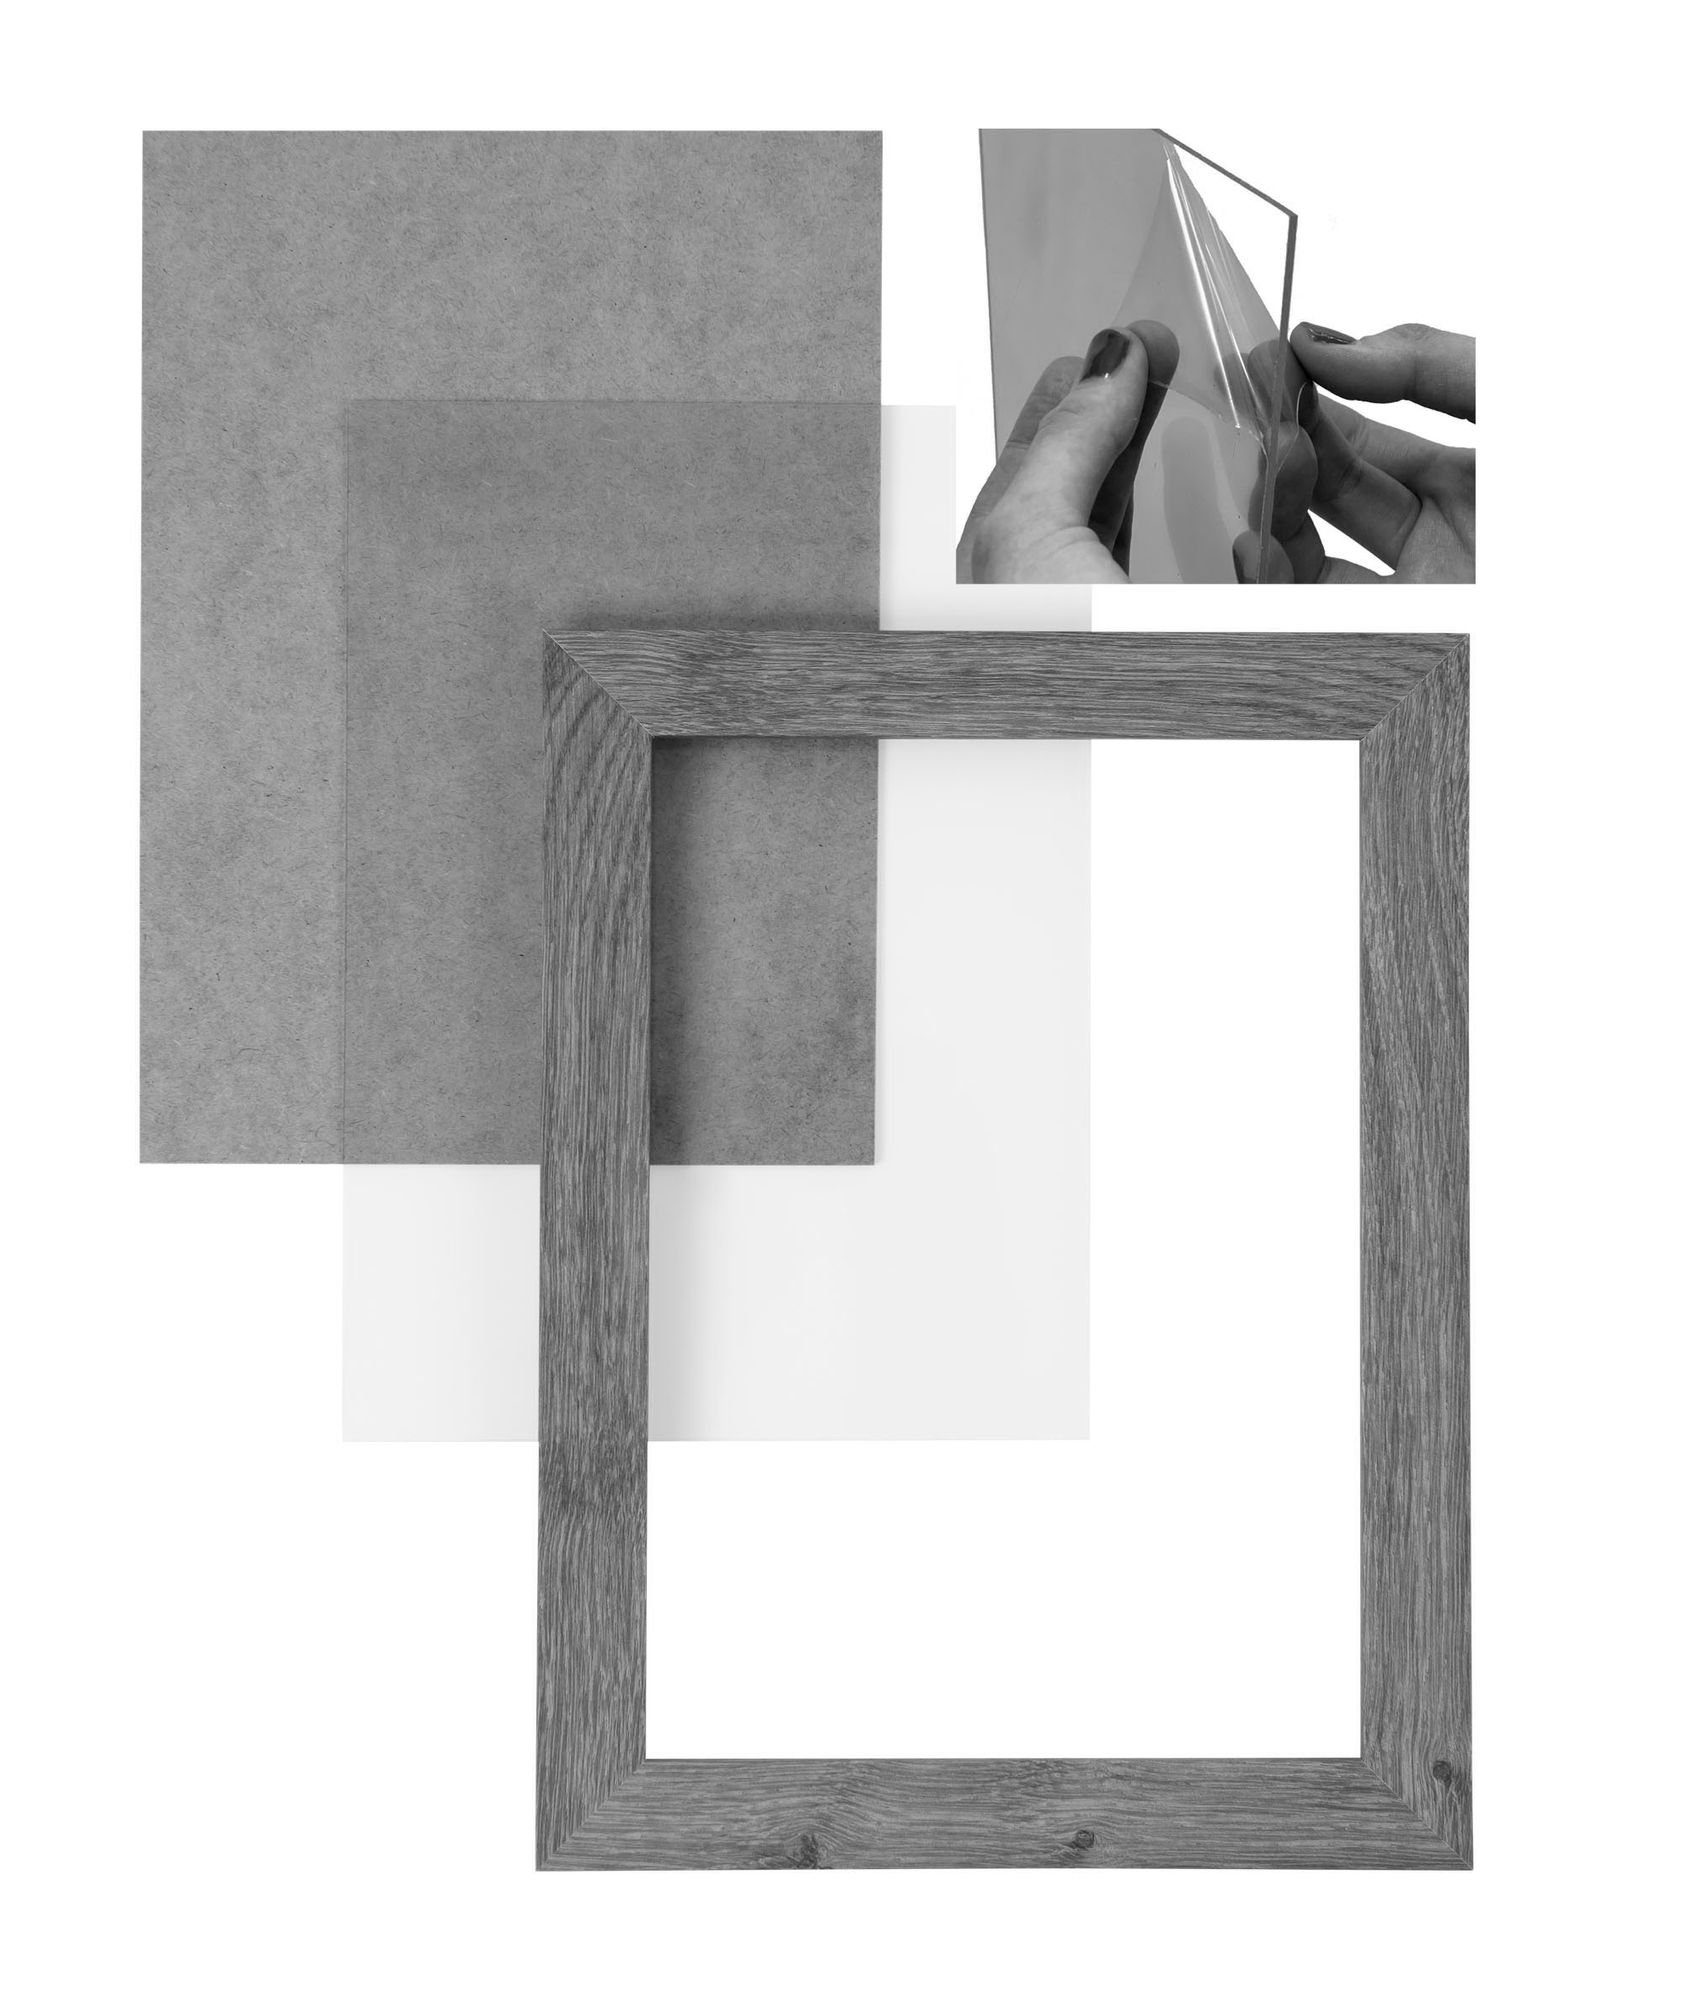 Rückwand eiche Clamaro und altholz Rahmen Aufhänger Acrylglas, Bilderrahmen 'Collage' inkl. in 62x92,5 Holz Maß Bilderrahmen eckiger nach MDF FSC® CLAMARO handgefertigt Moderner